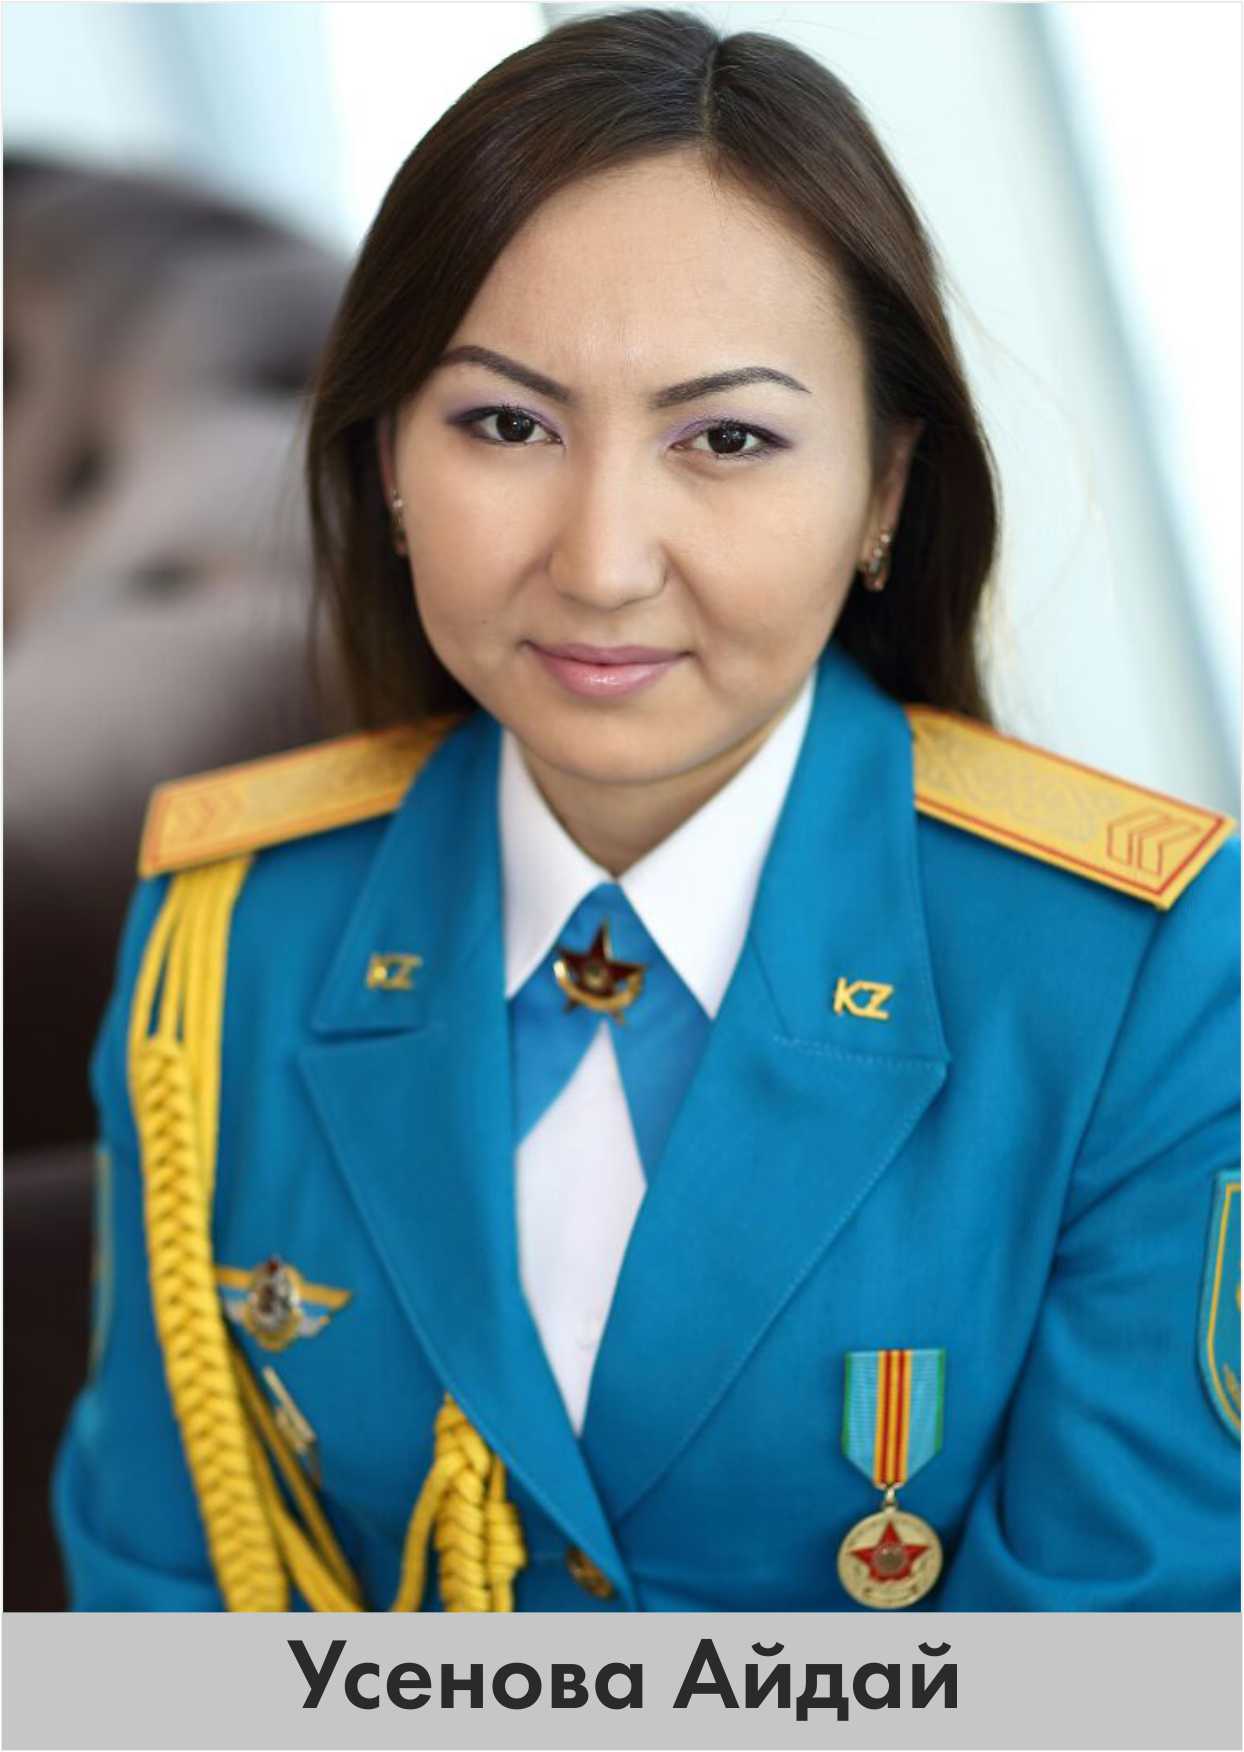 образцы новой формы казахстан